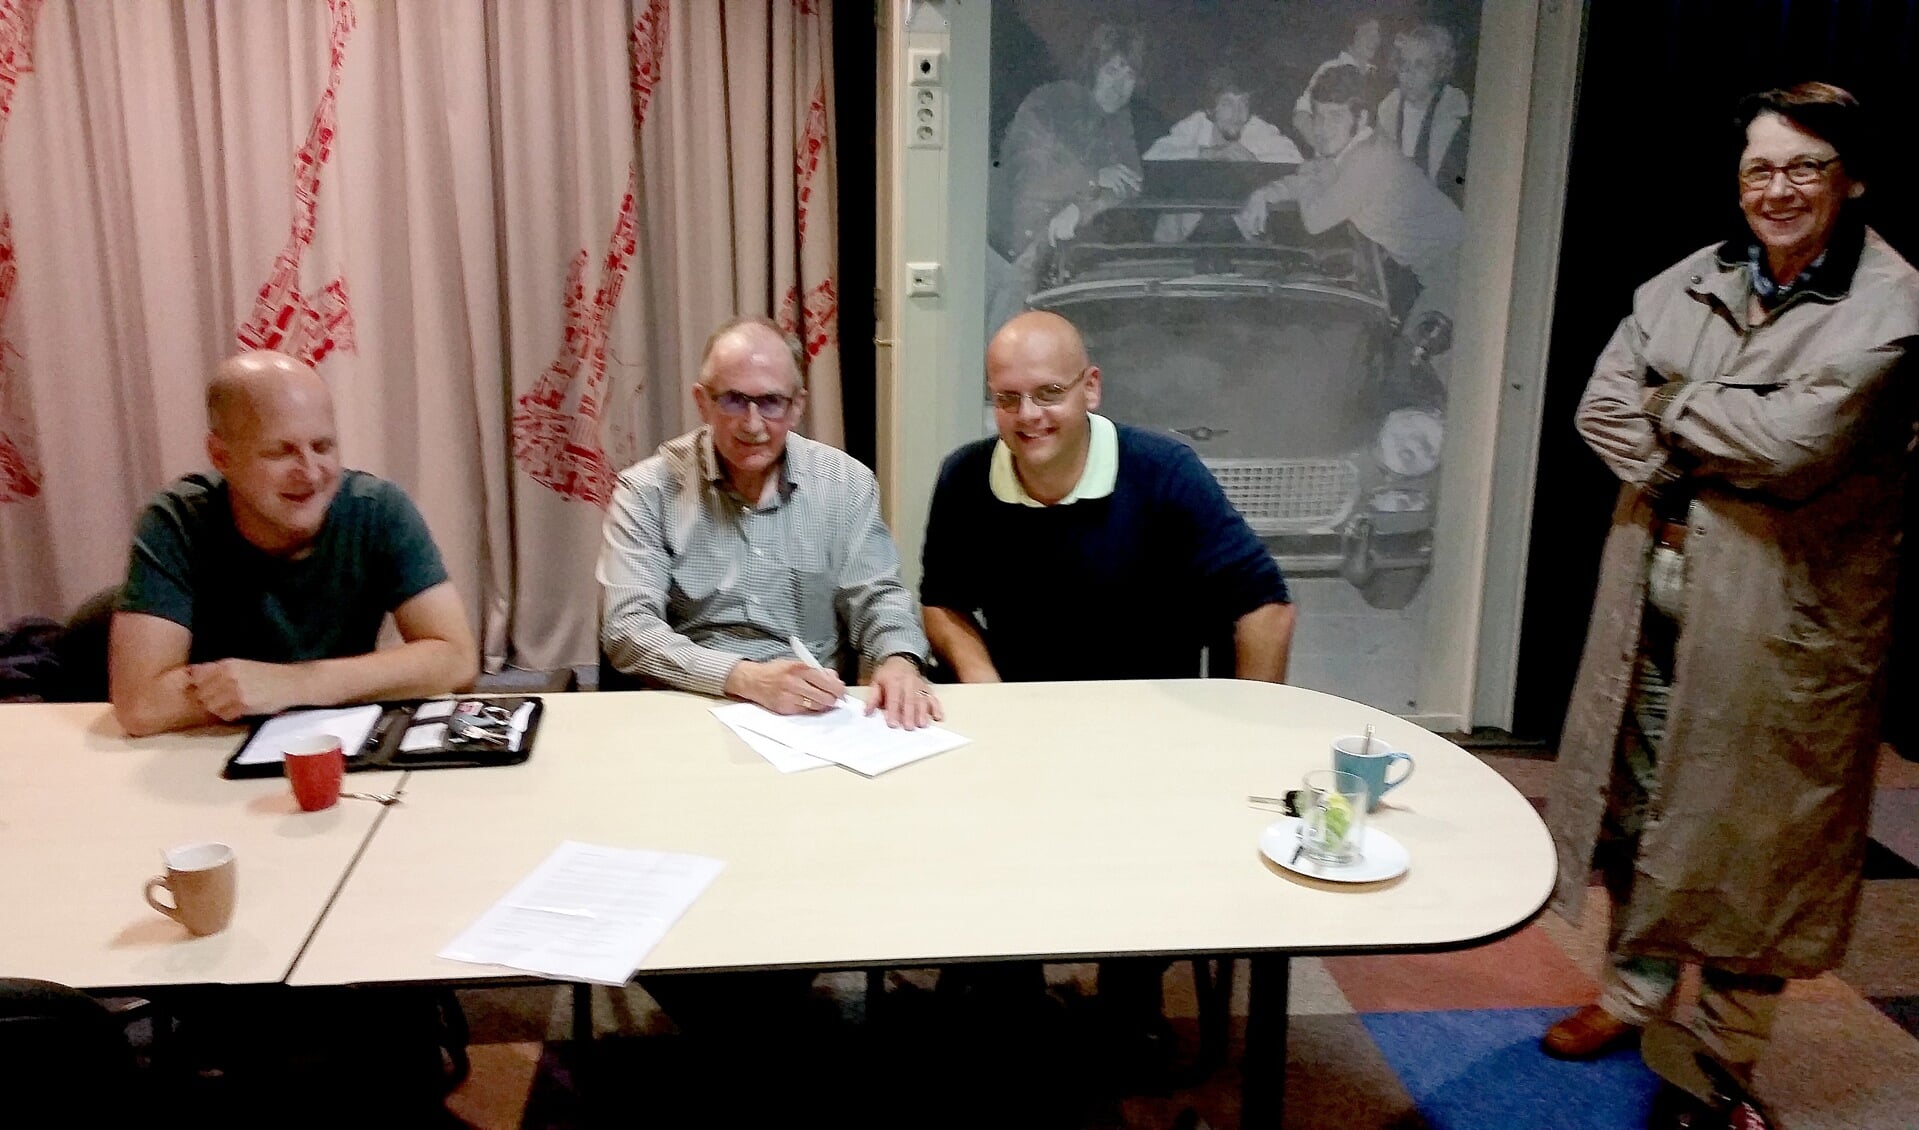 Het tekenen van de intentieverklaring door Robert de Bok (penningmeester Midvliet), Louis Bekker (voorzitter Midvliet), Onno van der Krogt (voorzitter Super FM) en Ellen Klaver (bestuurslid Midvliet).